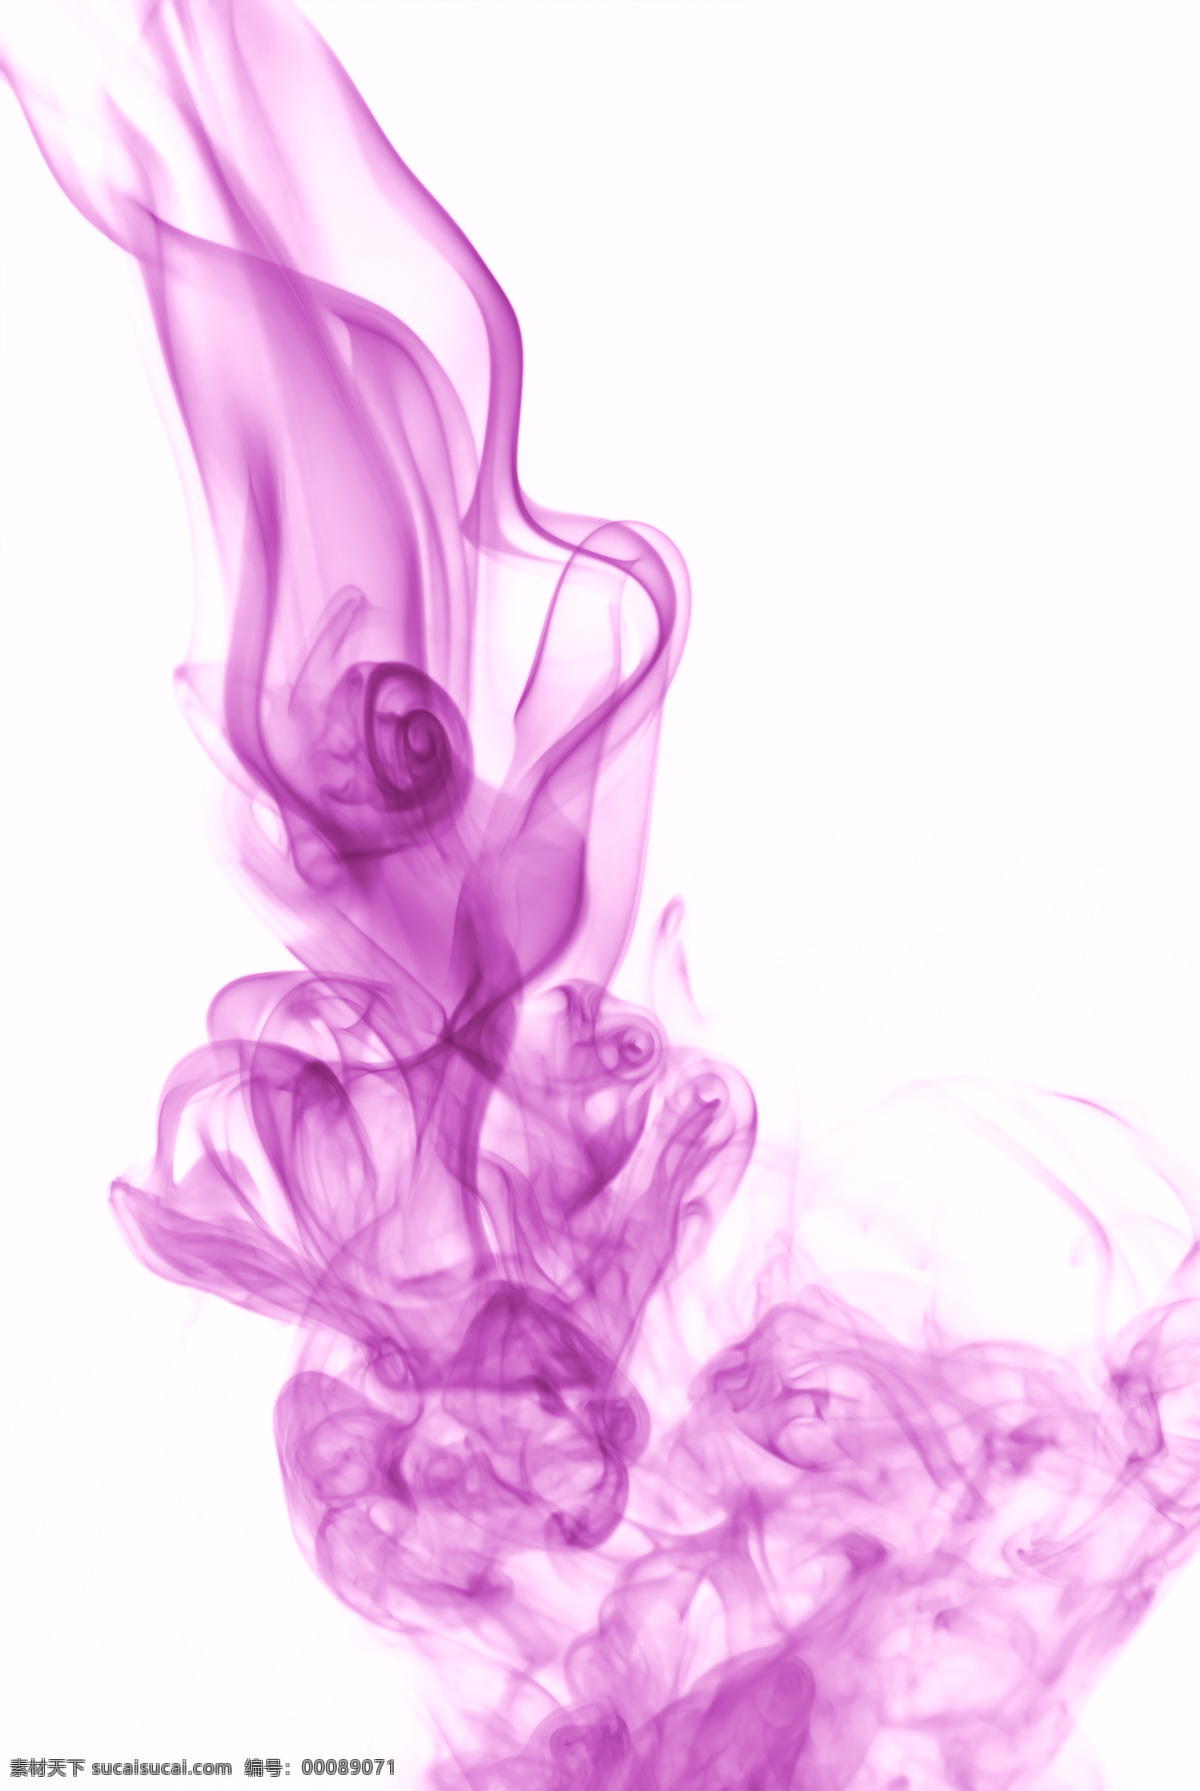 紫雾缭绕 虹雾缭绕 彩雾缭绕 紫色 粉红 彩虹 虹光 彩雾 缭绕 烟 气体 烟状物 水墨 背景底纹 底纹边框